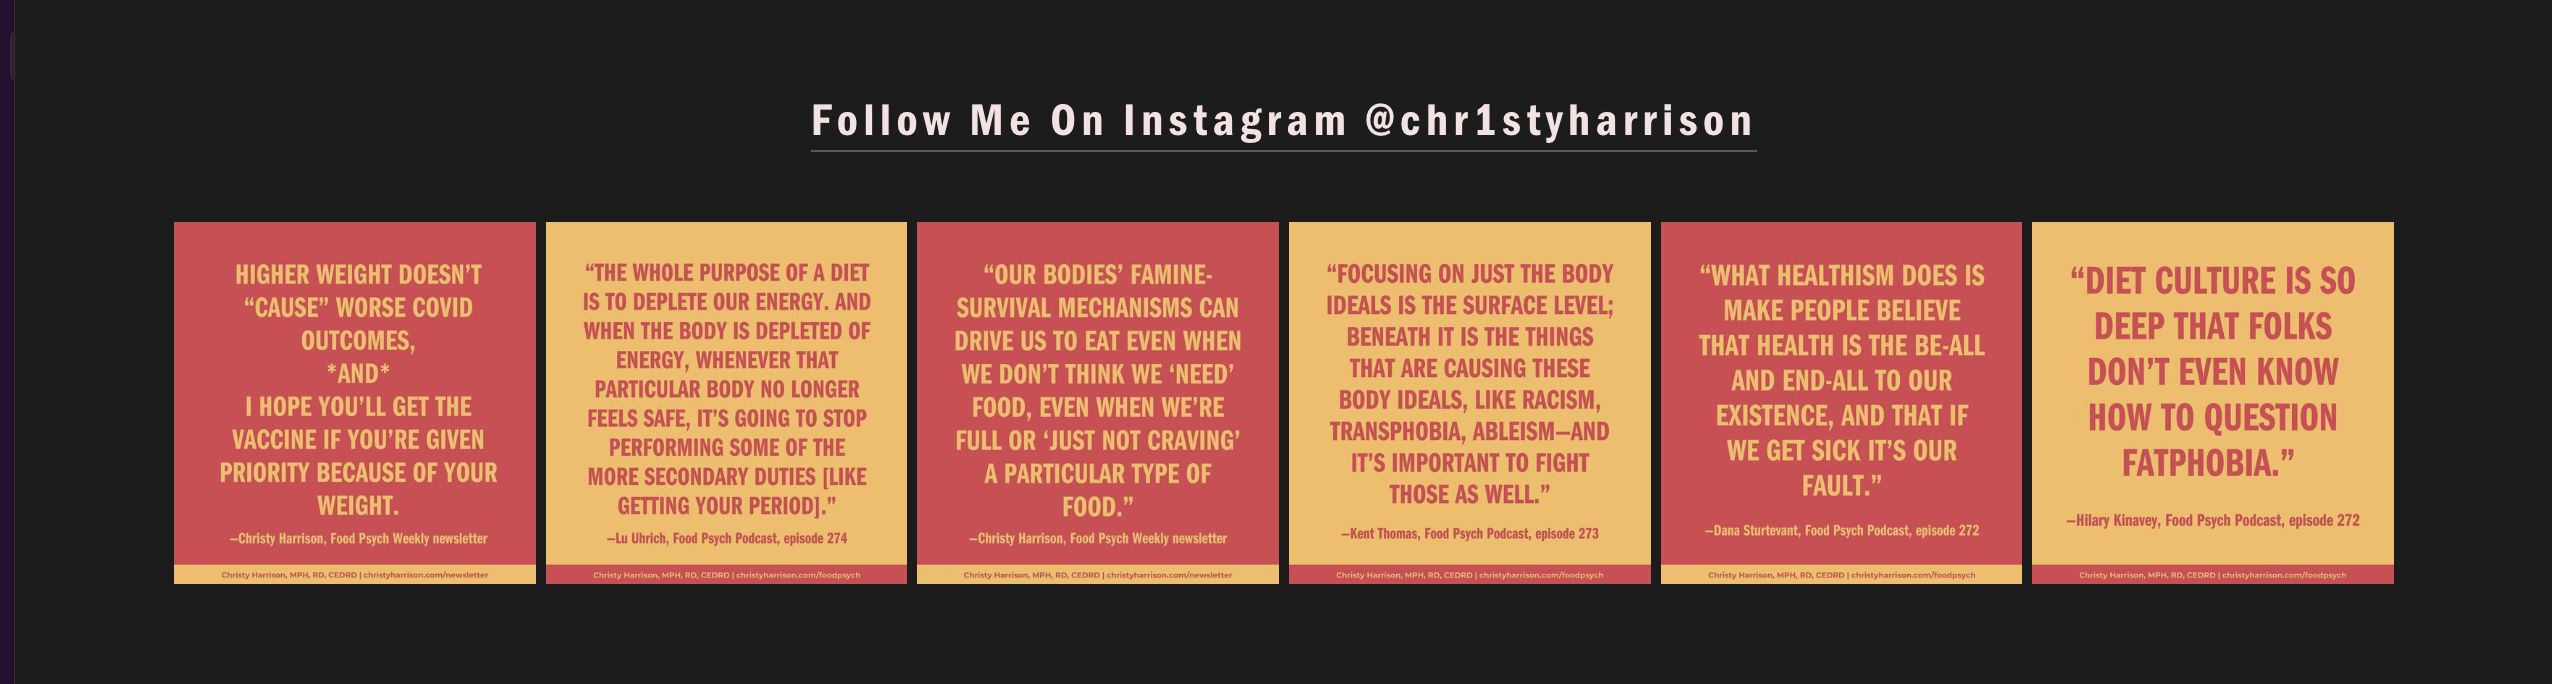 Follow Me On Instagram @chr1styharrison